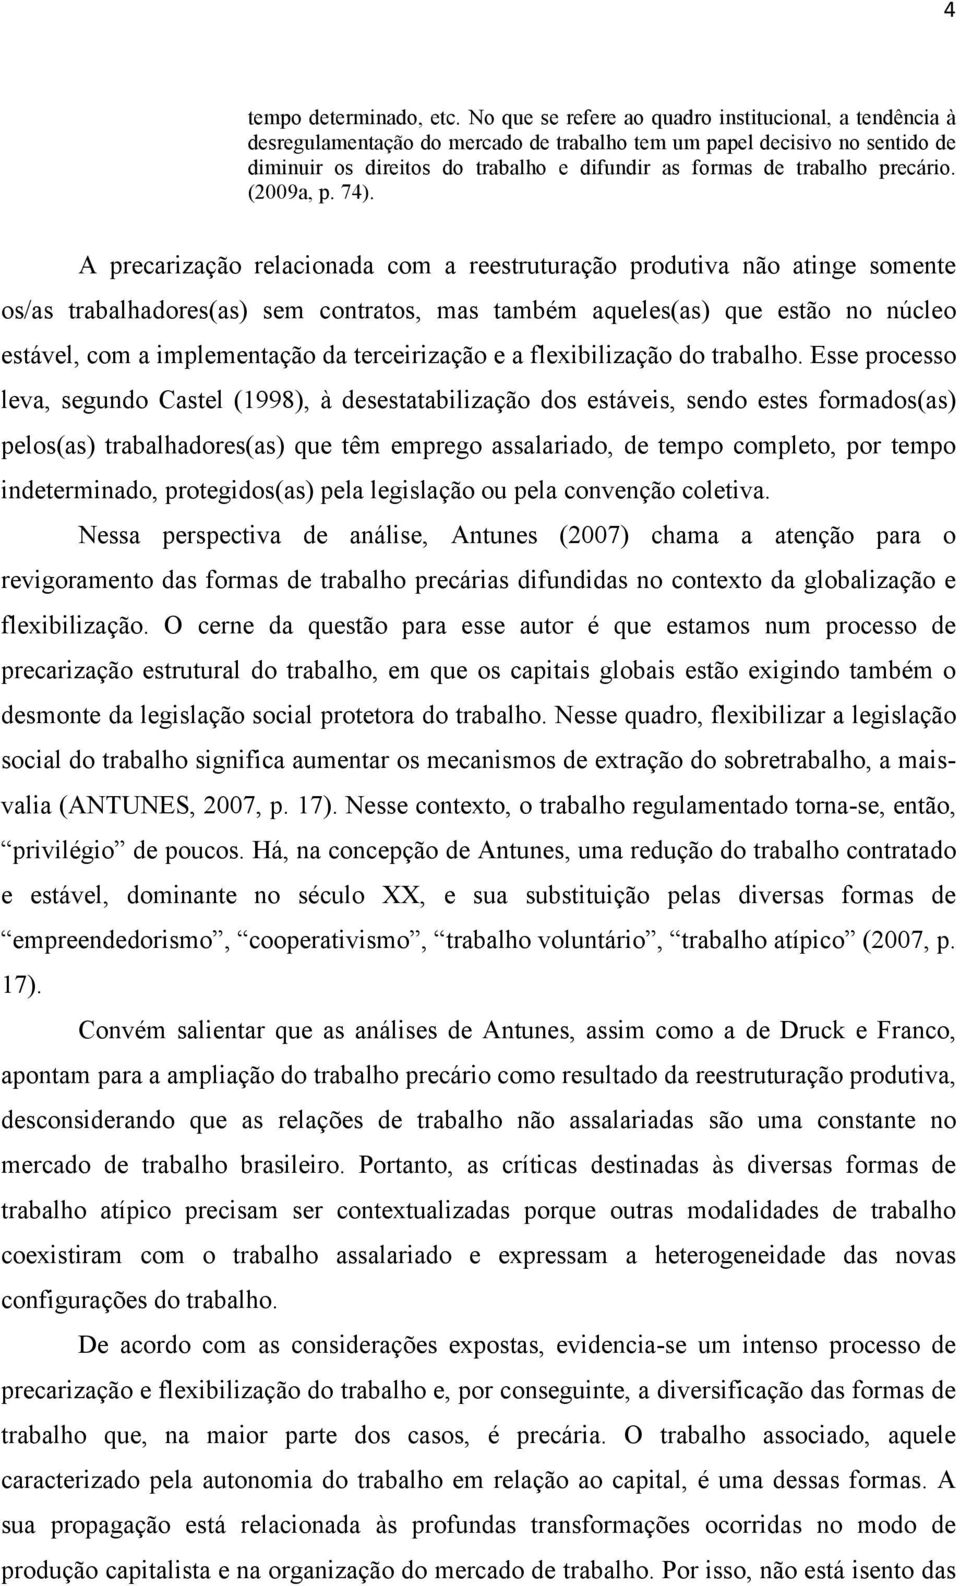 precário. (2009a, p. 74).